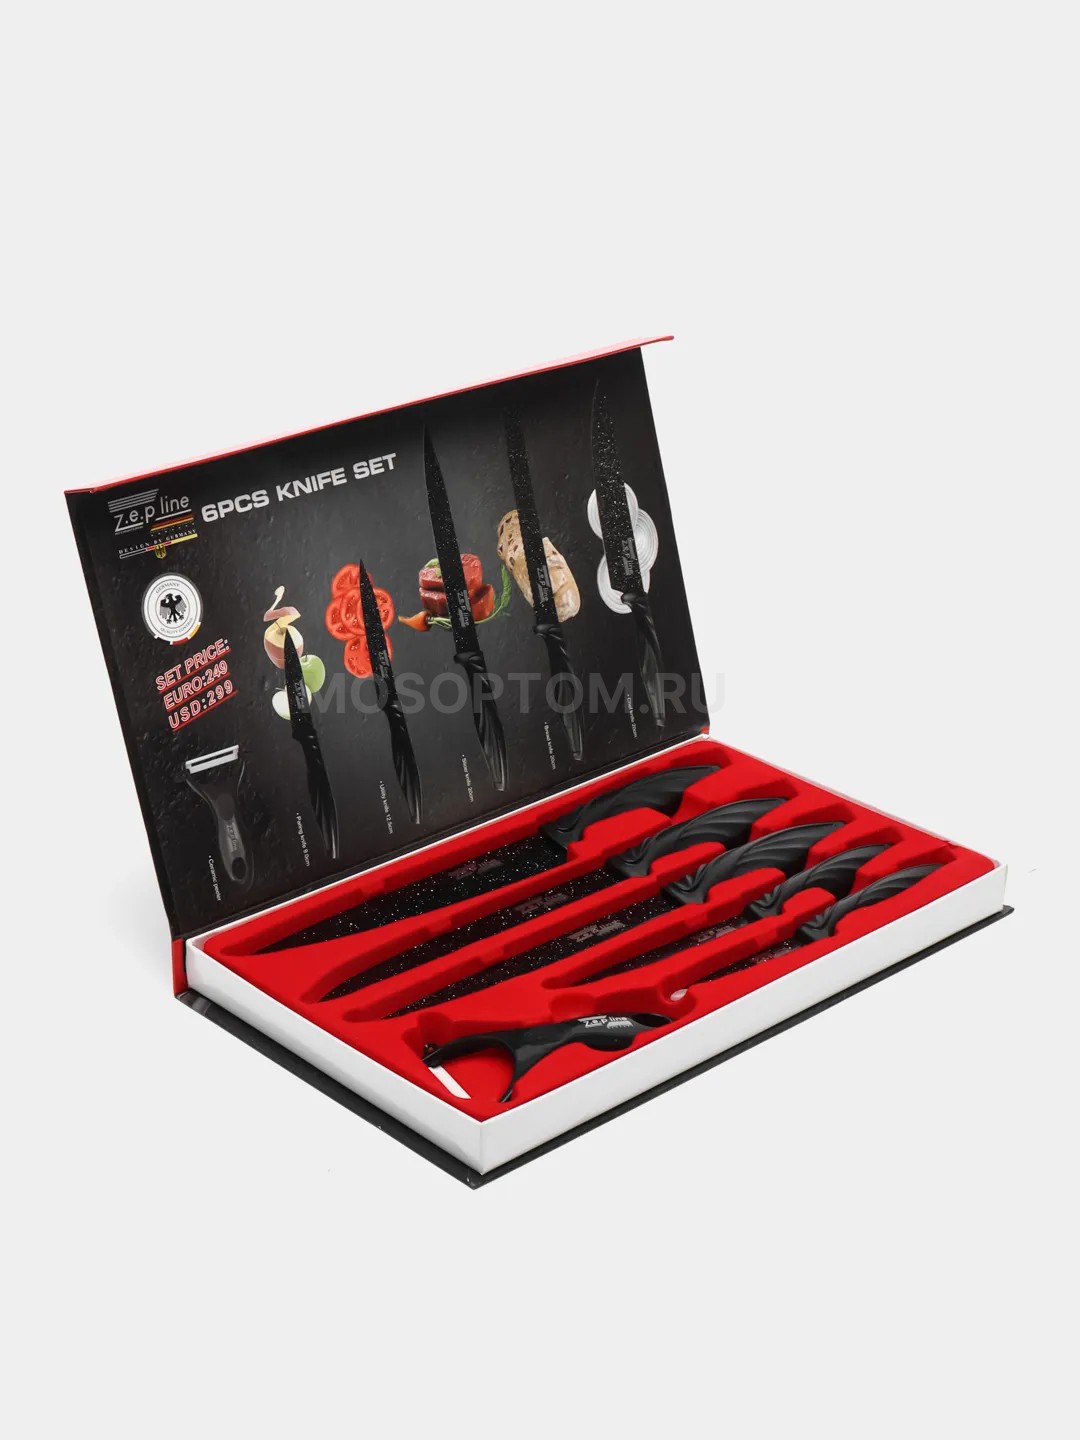 Набор кухонных ножей в подарочной коробке, 6 предметов Zep Line ZP-6632 оптом - Фото №3